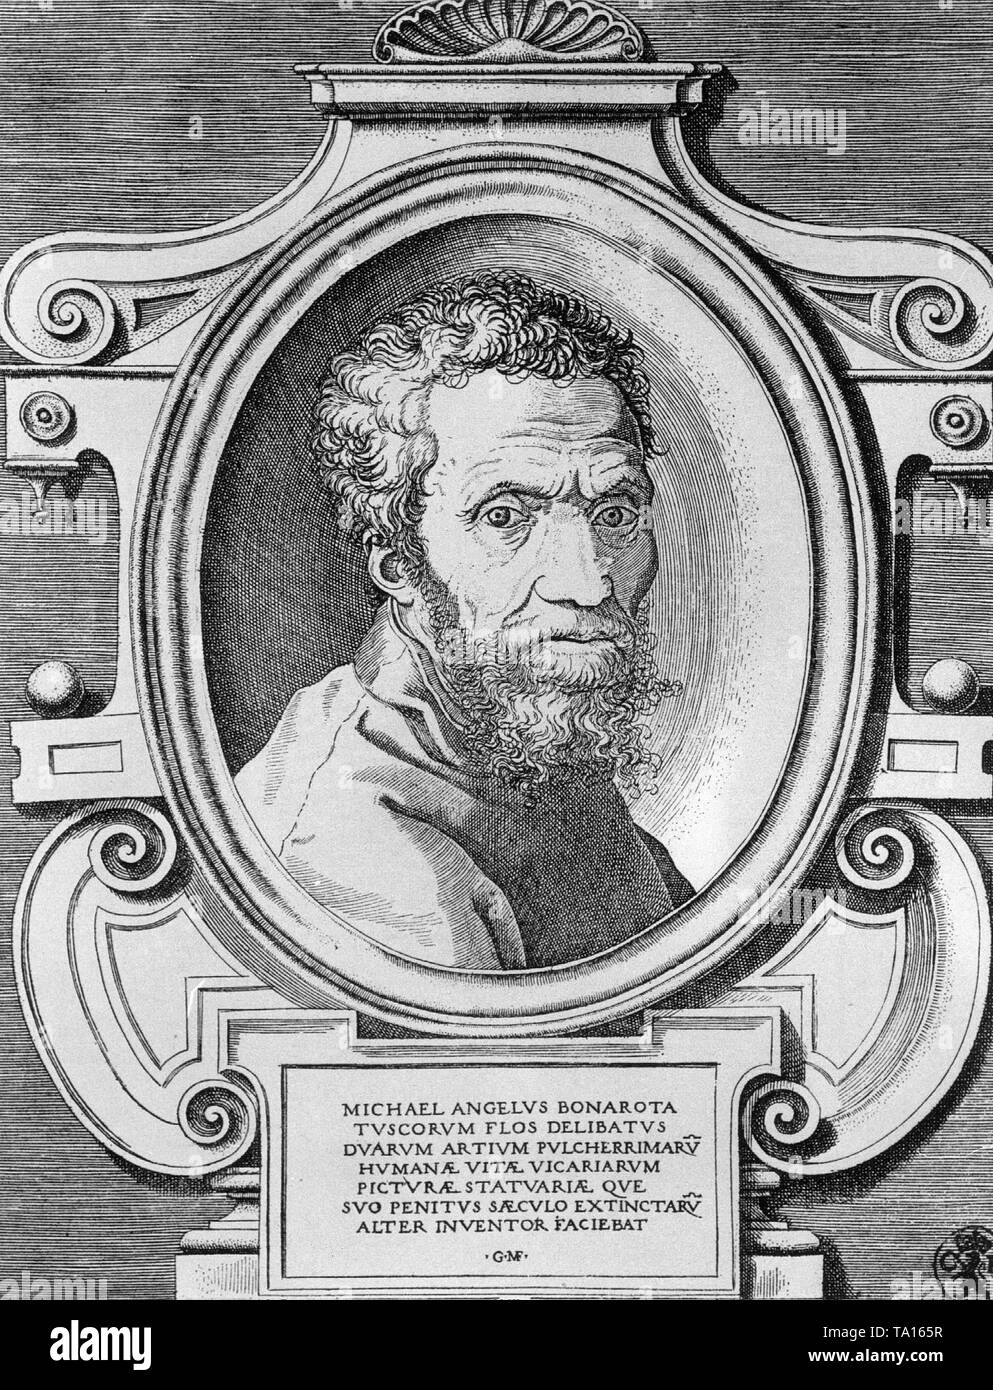 Michelangelo Buonarroti, italienischer Bildhauer, Maler, Architekt und Dichter. Portrait von Giorgio Ghisi Mantuano. Stockfoto